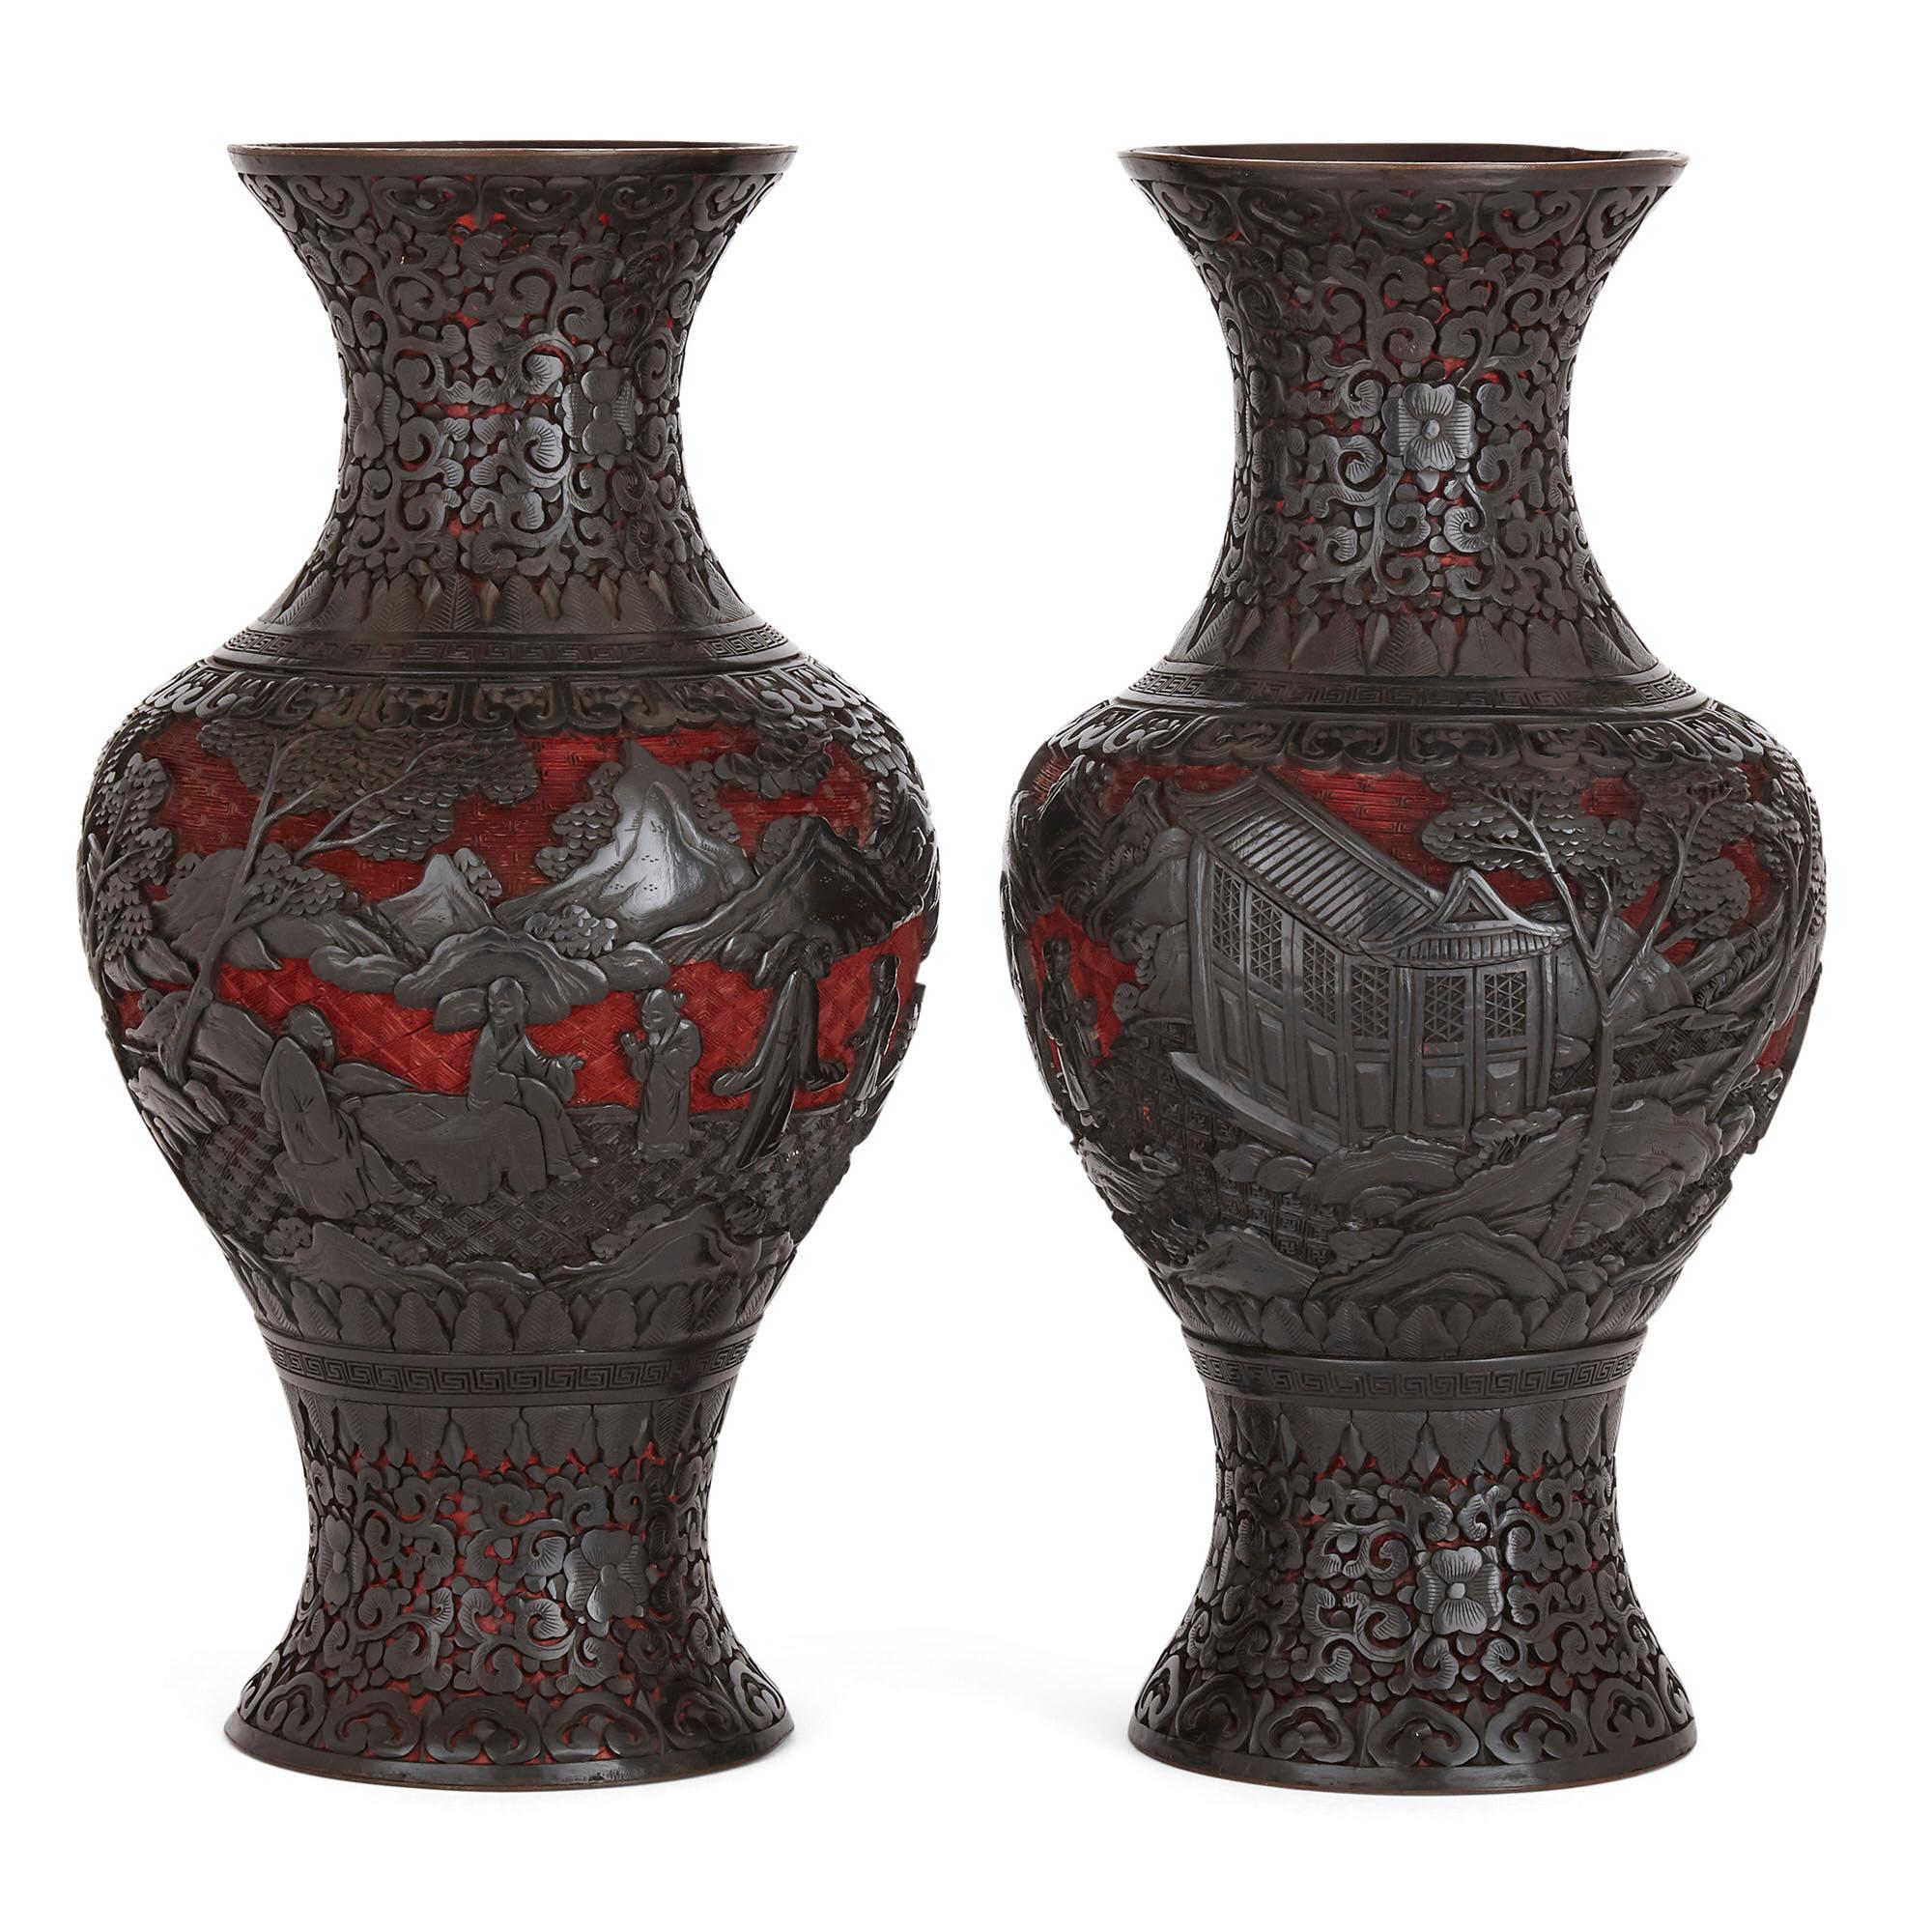 Jede Vase dieses Paares ist balusterförmig und reichlich mit wunderschön geschnitzten und geschichteten Lackierungen verziert. Der Korpus jeder Vase ist in der für die späte Qing-Dynastie typischen traditionellen Weise lackiert, wobei sich Schwarz